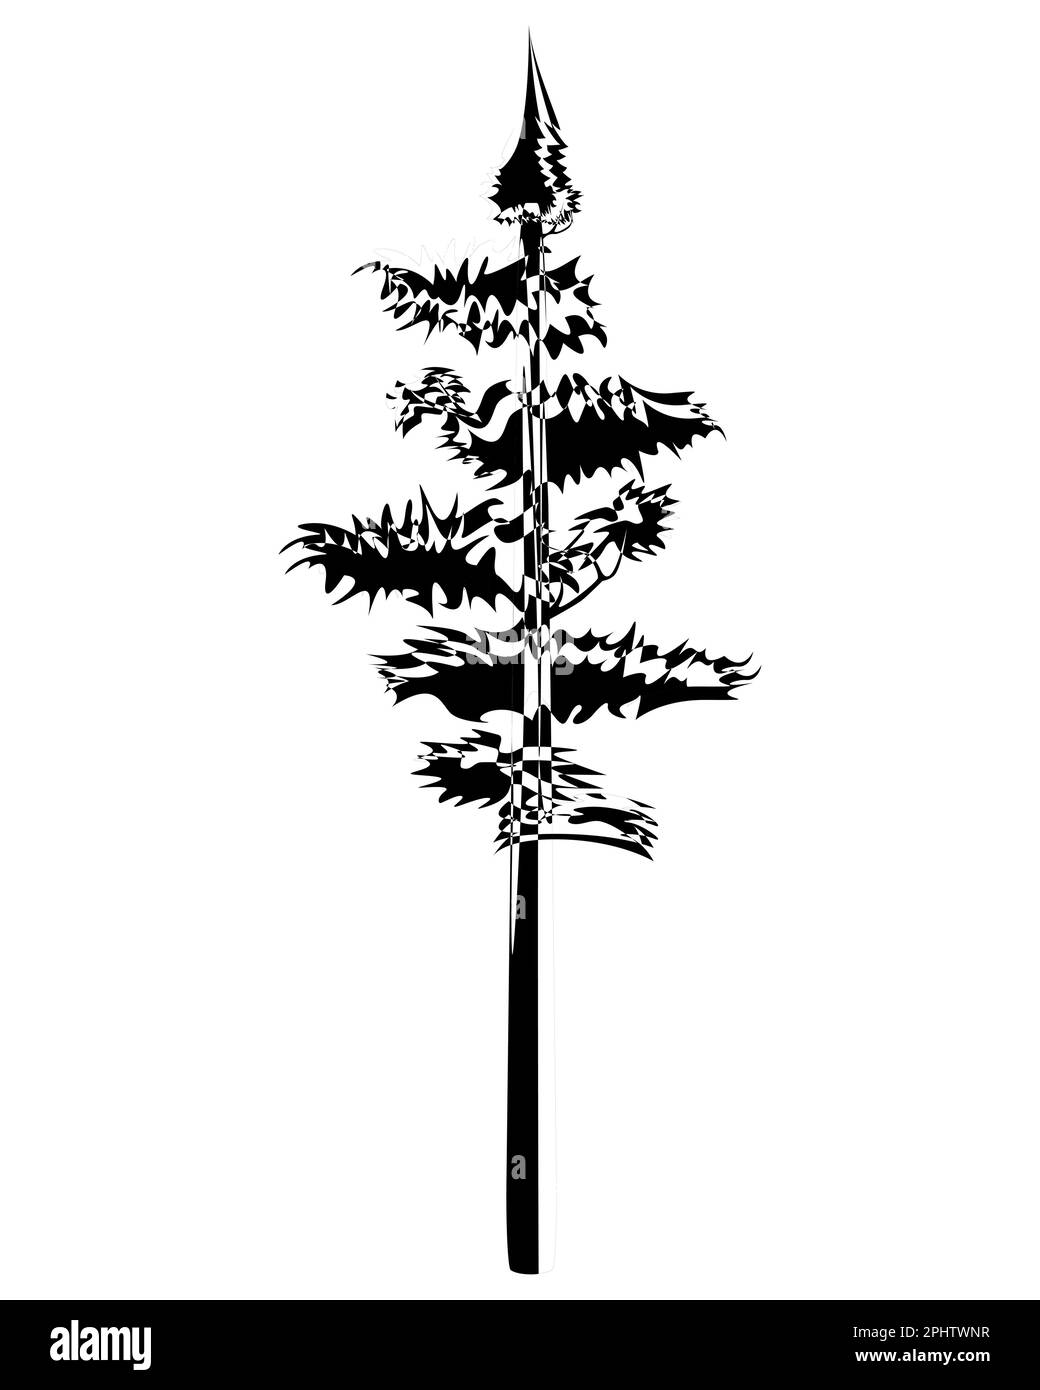 Tall Pine Tree im Umriss. Immergrüne Nadelholz-Fichte. Vektordarstellung auf weißem Hintergrund. Stock Vektor